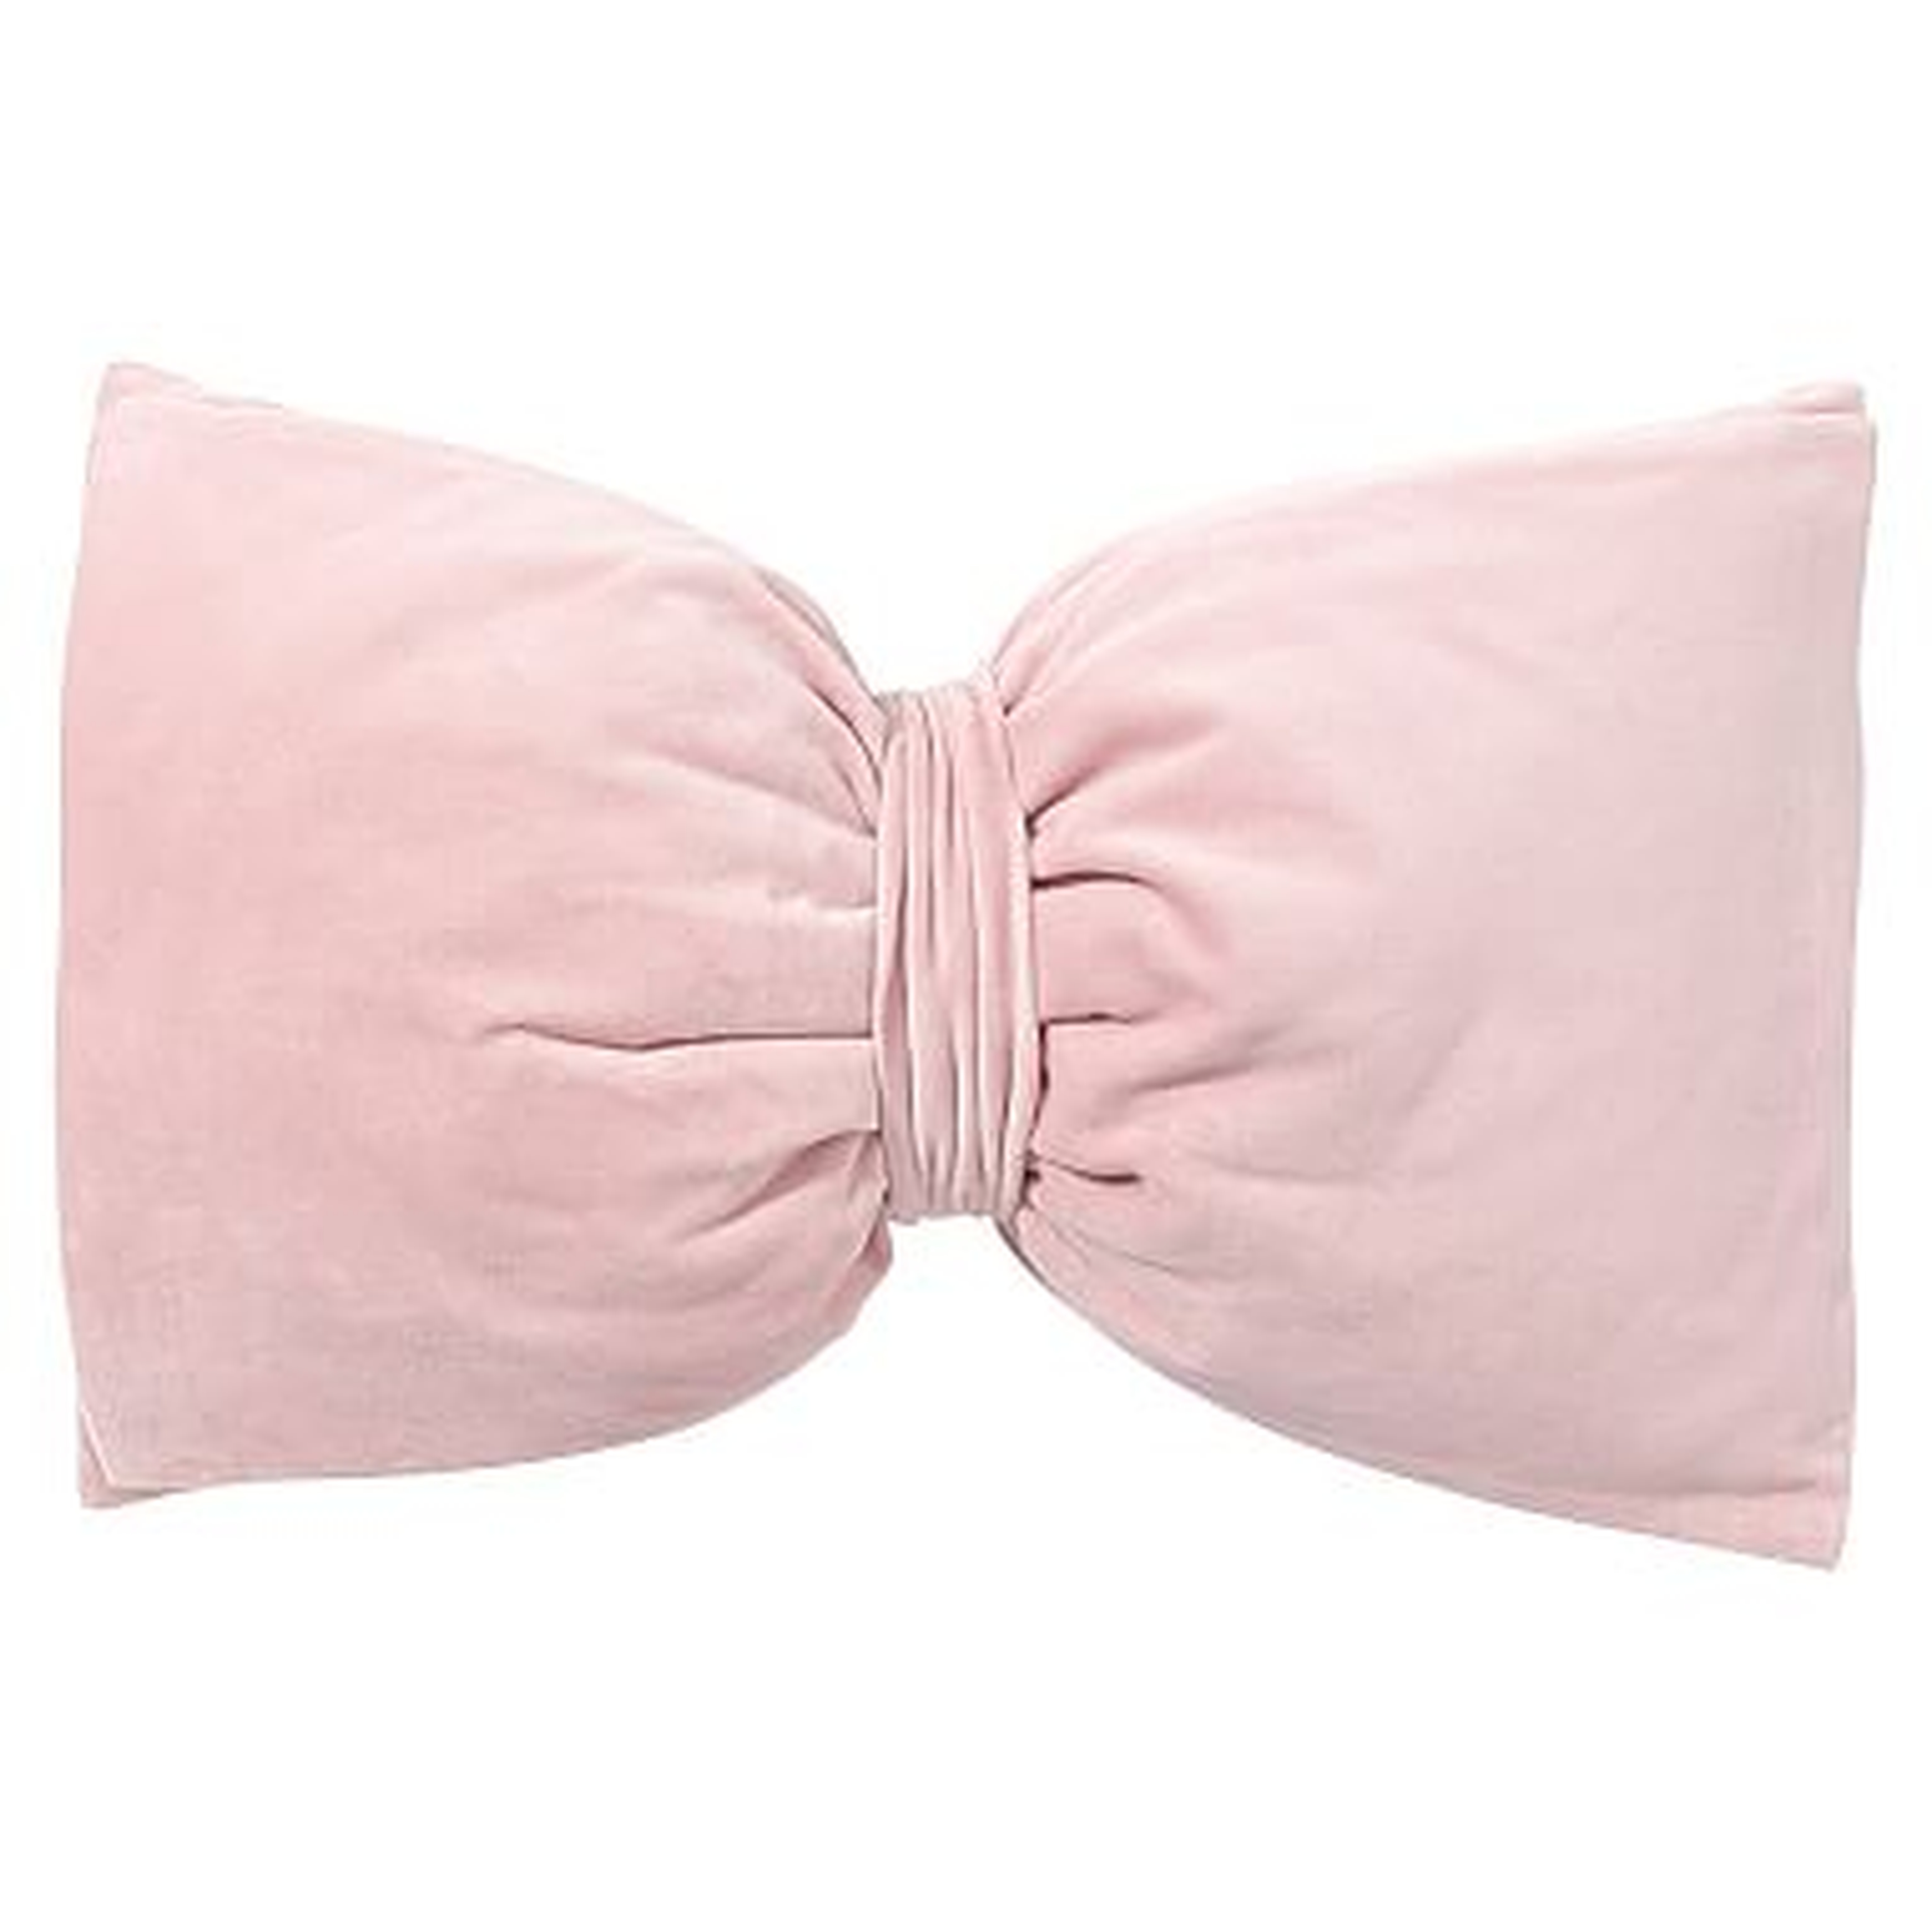 The Emily &amp; Meritt Velvet Bow Pillows, Quartz Pink - Pottery Barn Teen